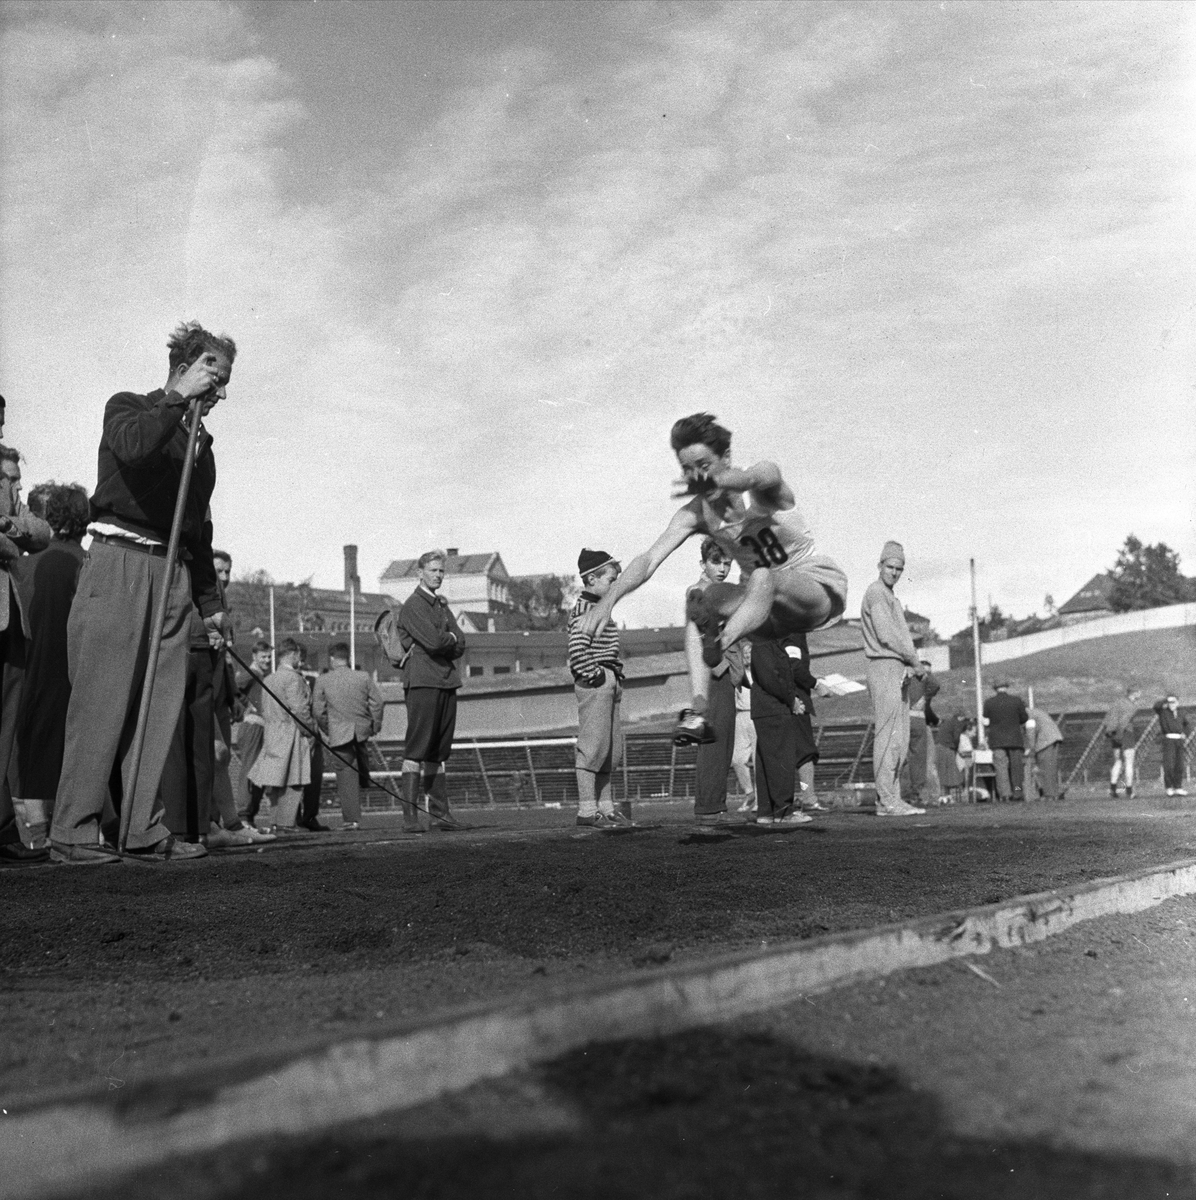 Norge, 17.09.1956. Bygdelag. Nordfjordlaget. Trøndere. Idrettstevne, lengdehopp.